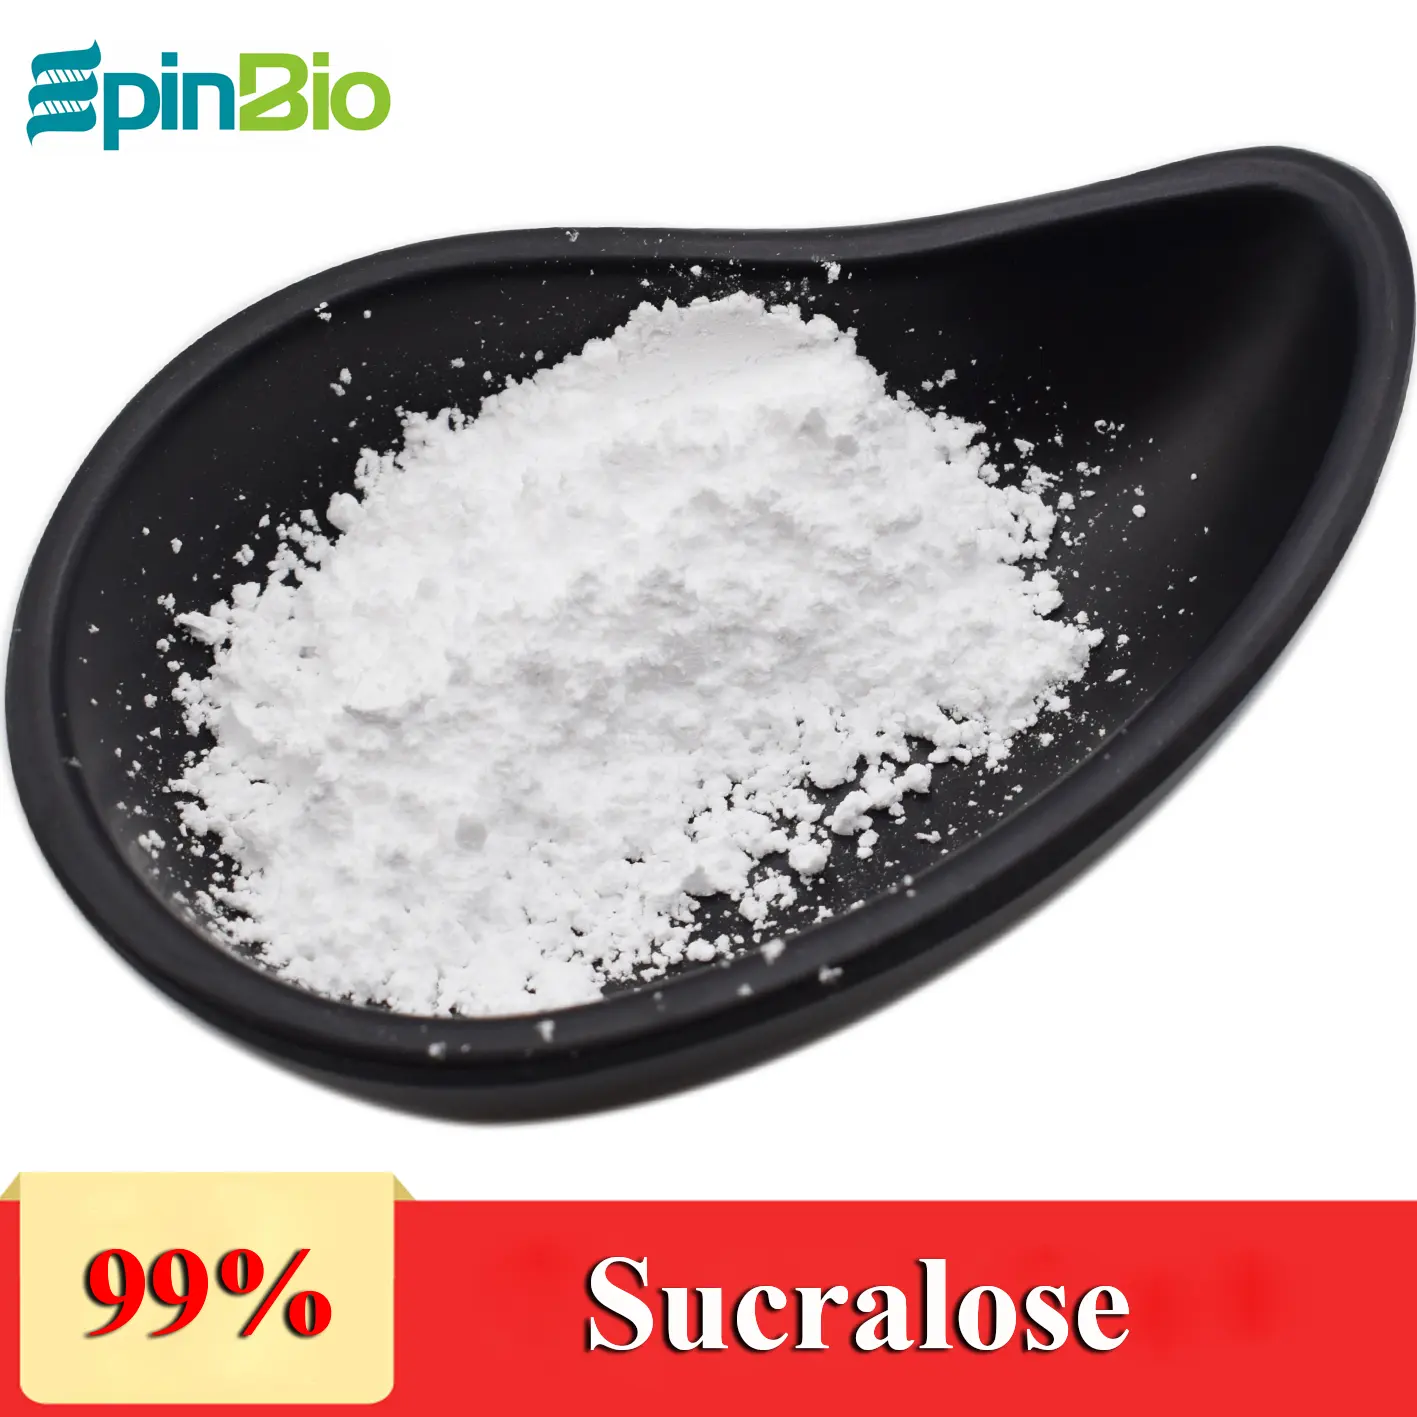 Großhandelspreis Sucralose Erythritol Mischpulver/Erythritol Sucralose 1-mal-Süßigkeit